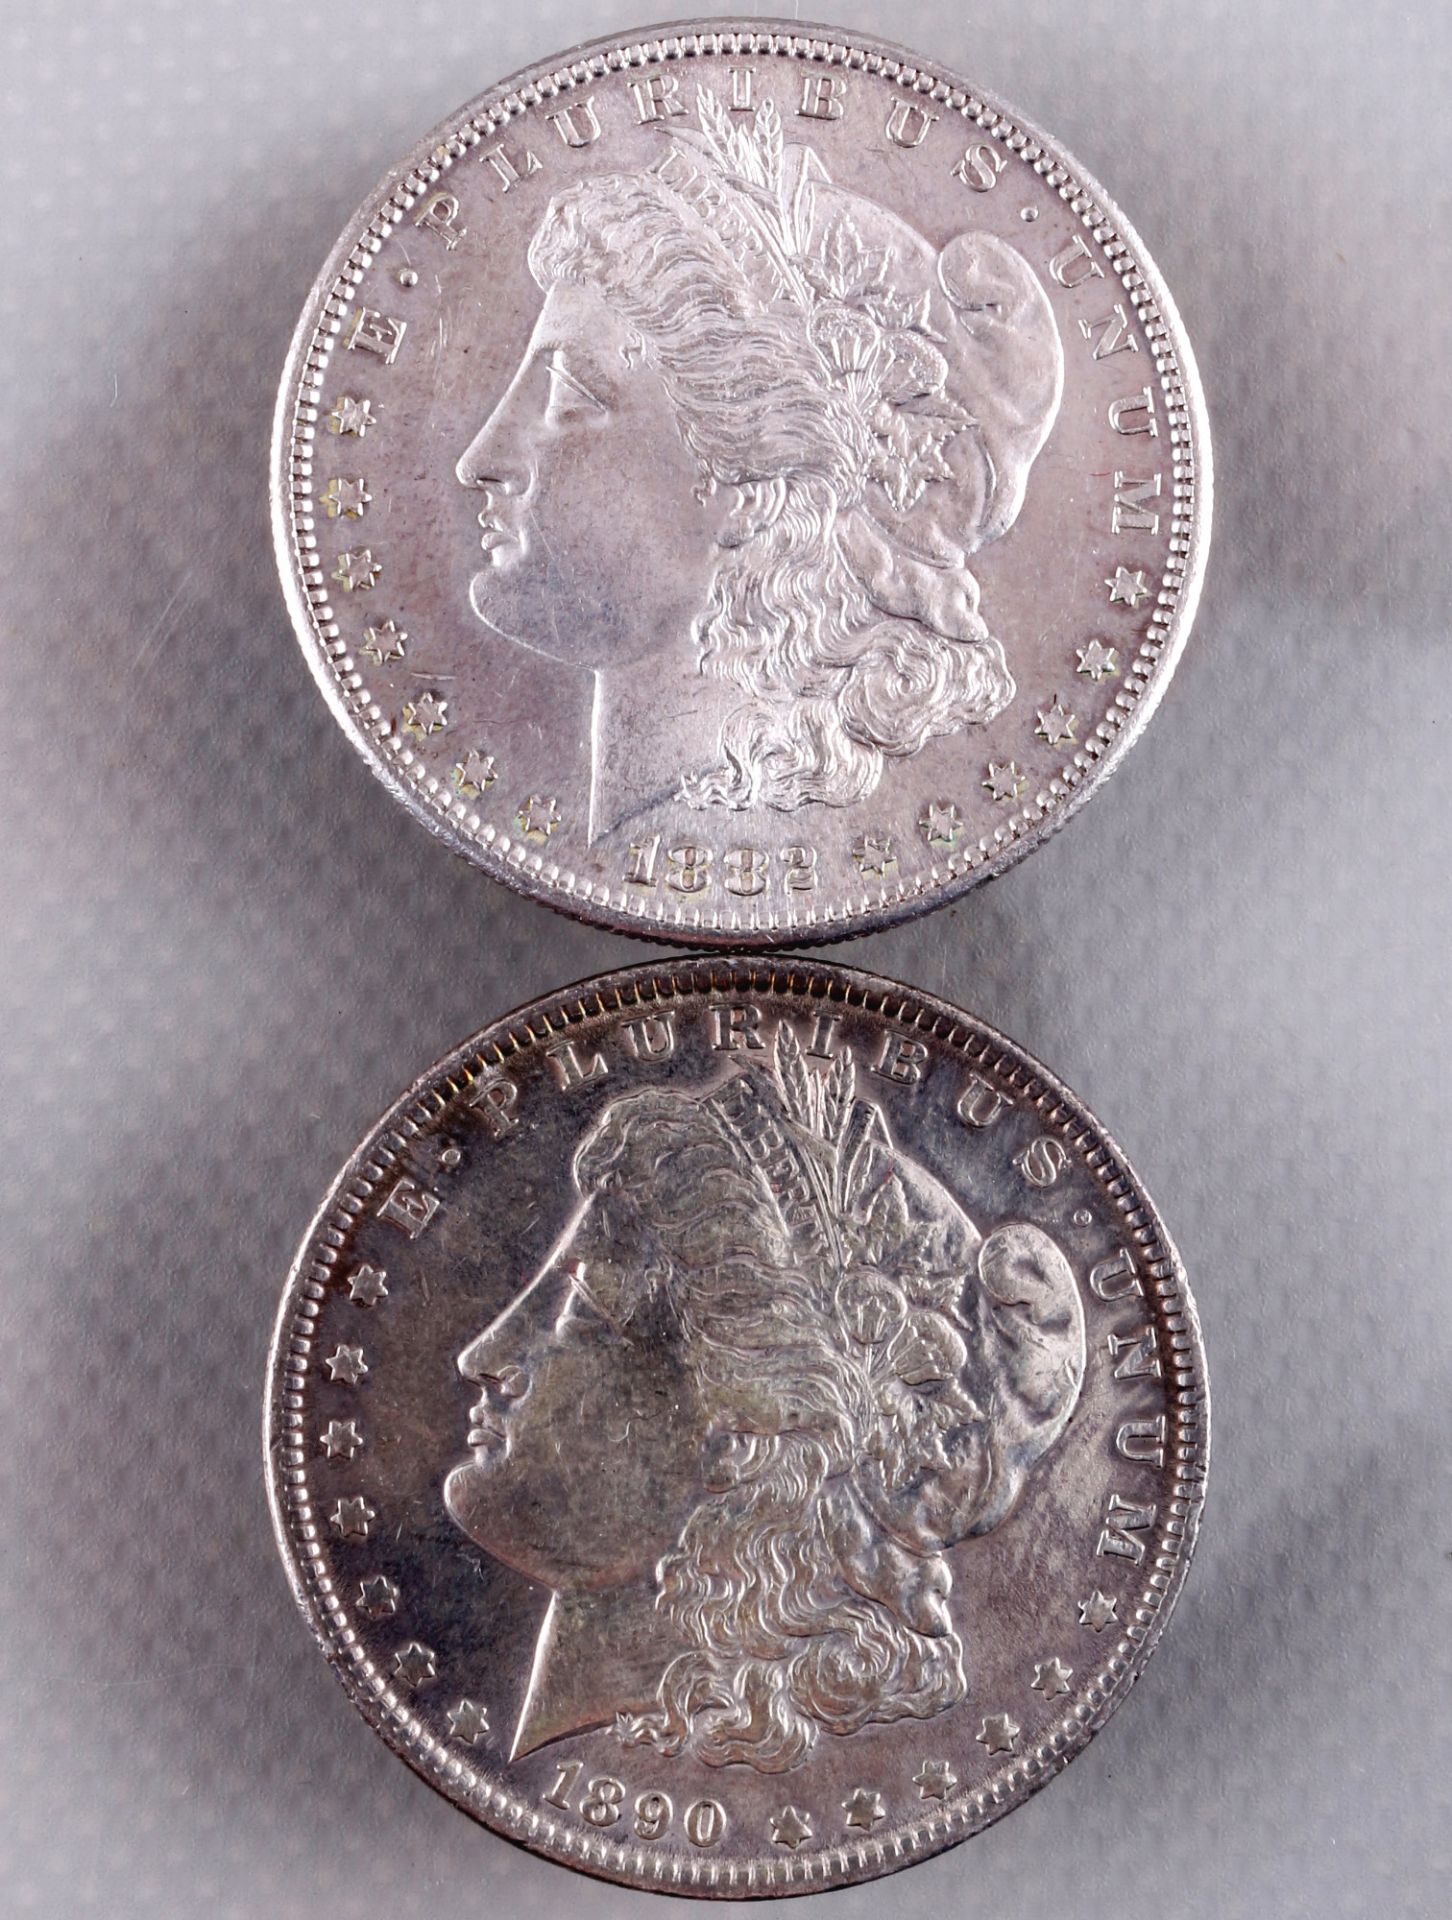 6 silver coins - Morgan Dollar 1882 - 1922, Silbermünzen - Morgan Dollar 1882 - 1922, - Image 3 of 5